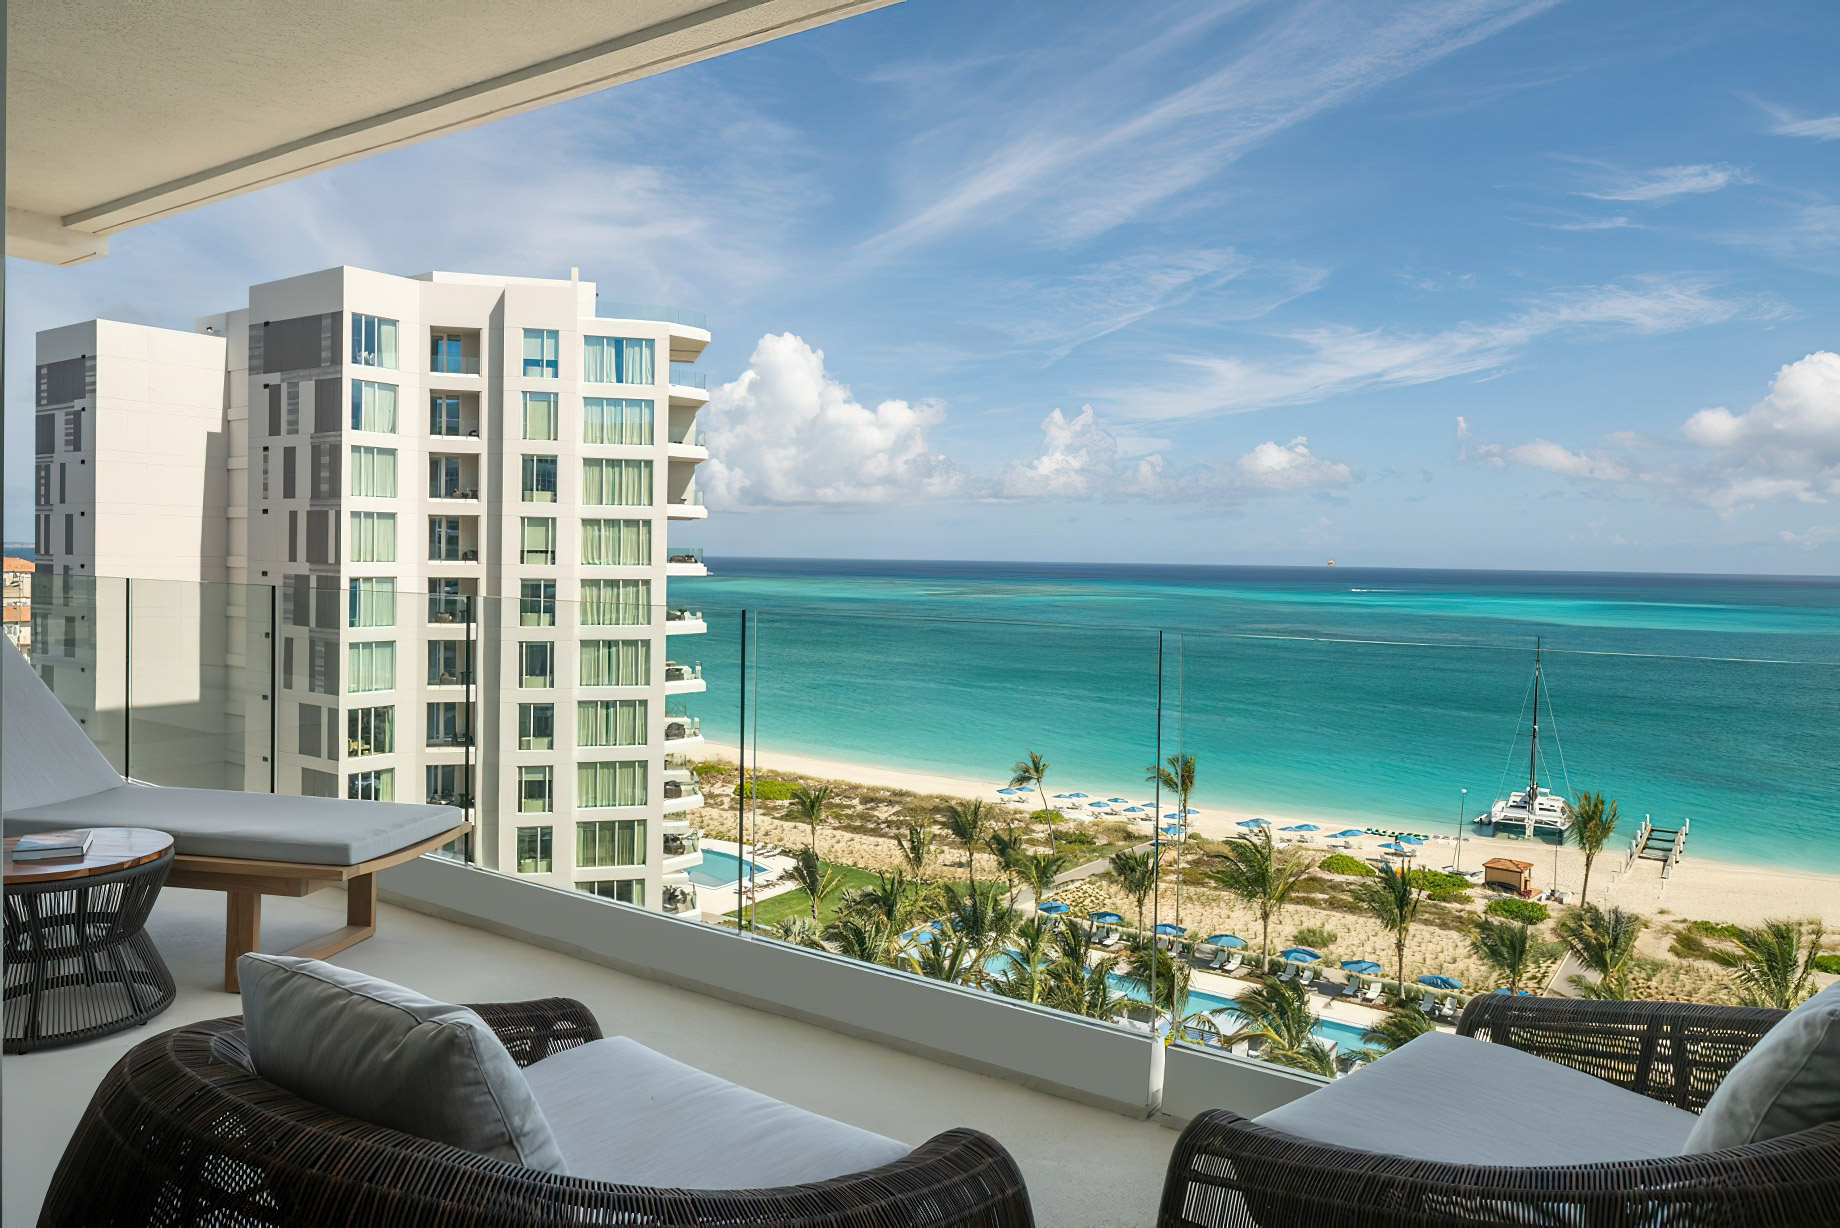 The Ritz-Carlton, Turks & Caicos Resort - Providenciales, Turks and Caicos Islands - Two Bedroom Executive Suite Ocean View Balcony